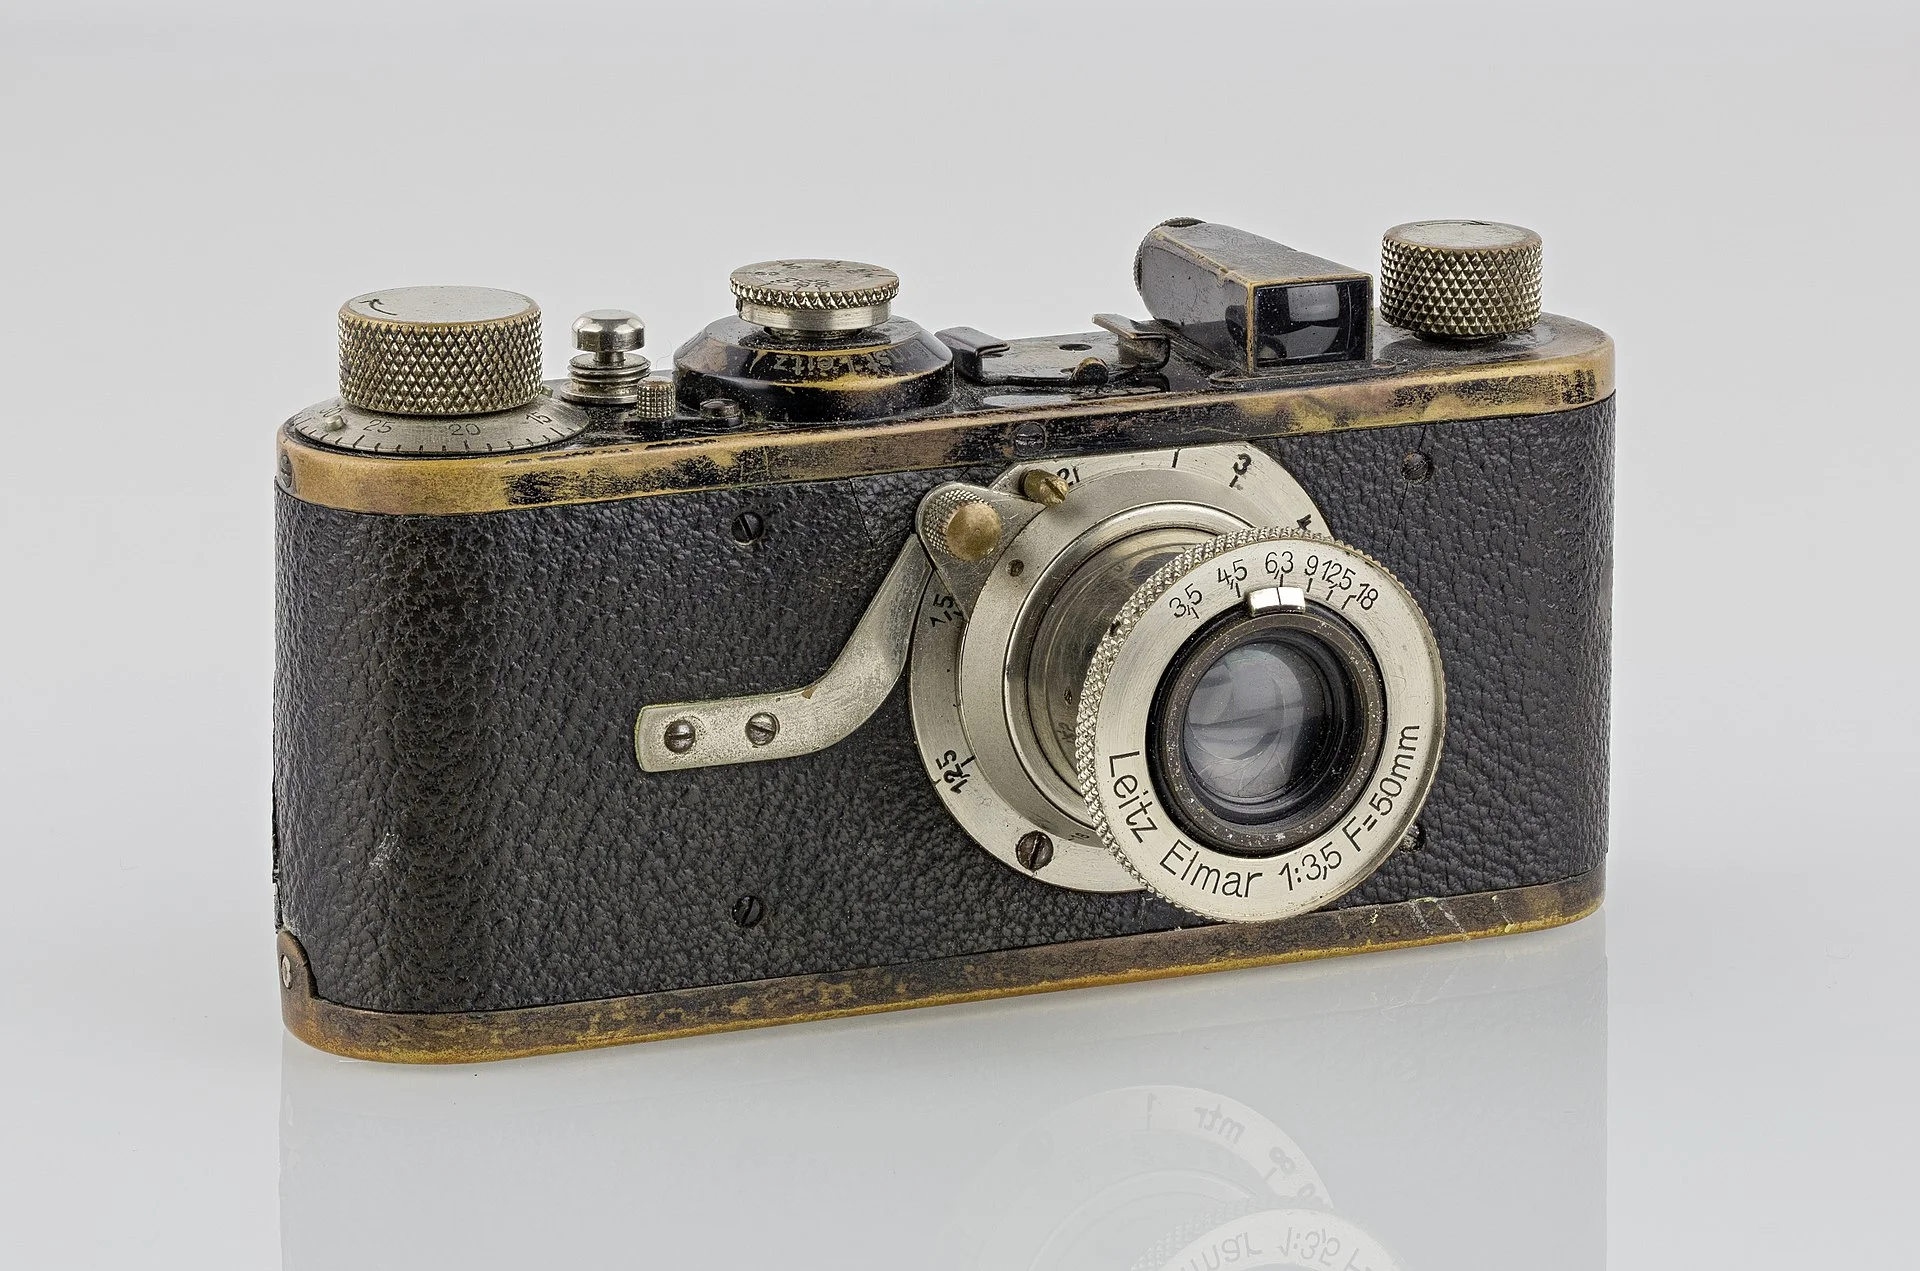 1920px-LEI0060_186_Leica_I_Sn.5193_1927_Originalzustand_Front-2_FS-15